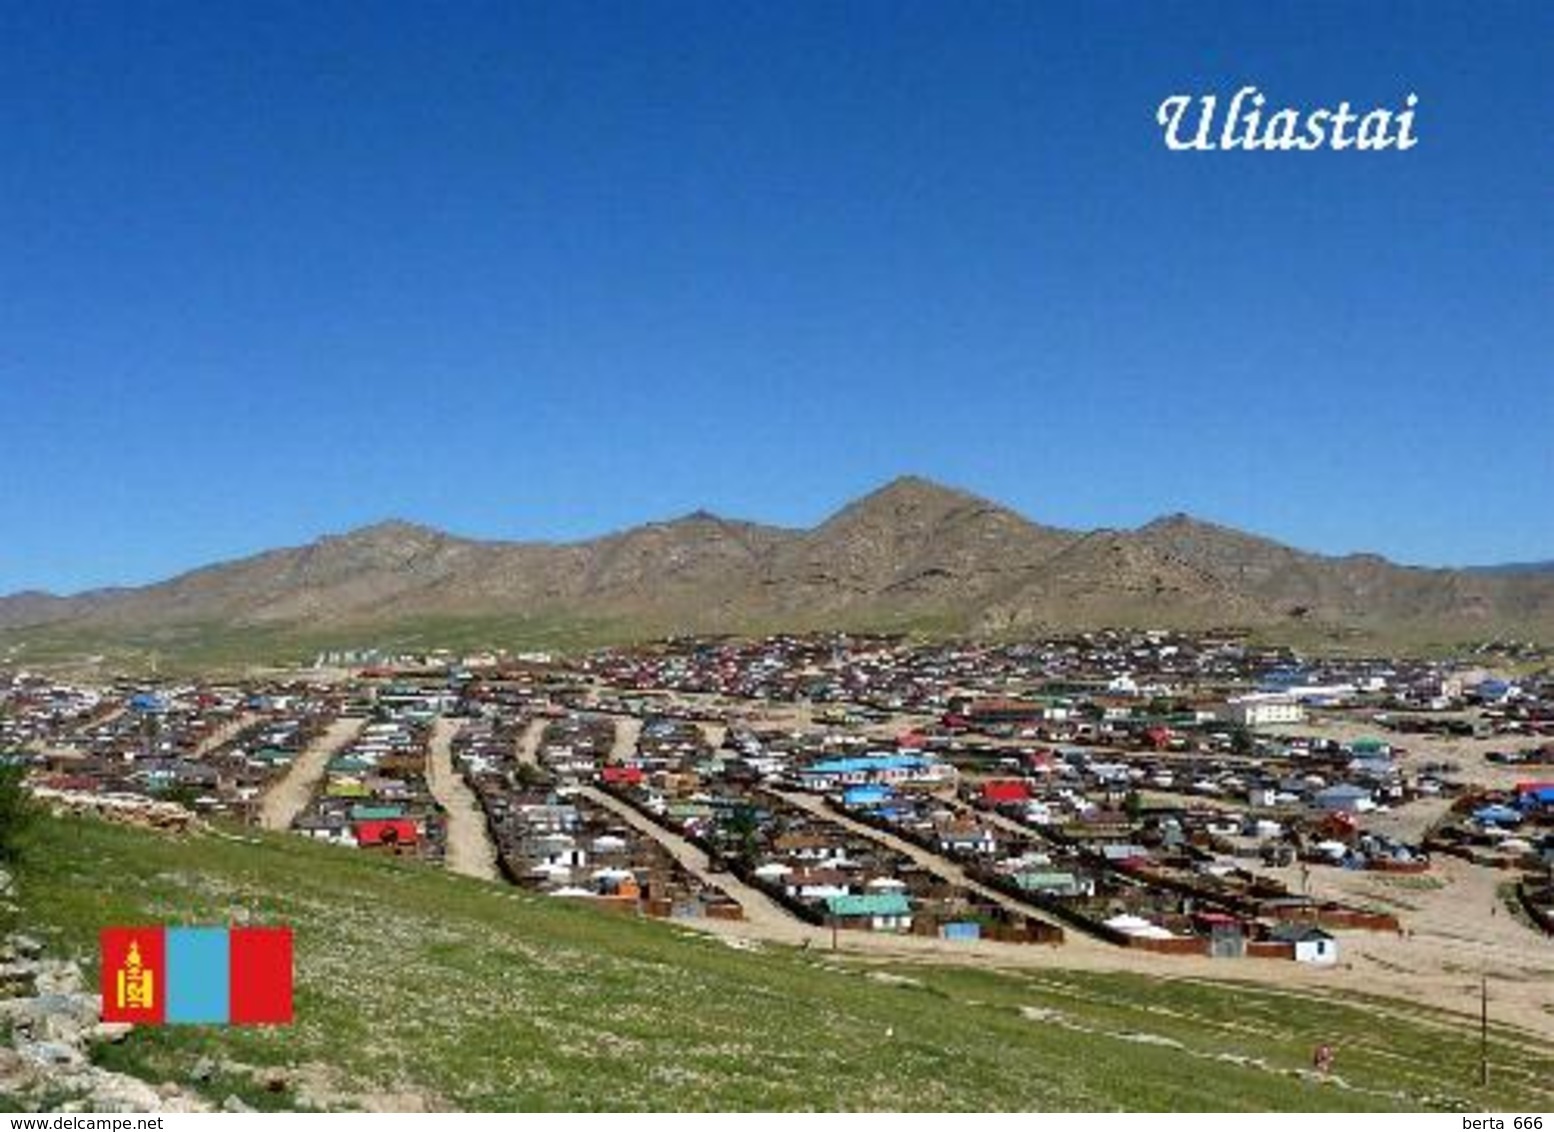 Mongolia Uliastai Aerial View New Postcard Mongolei AK - Mongolei